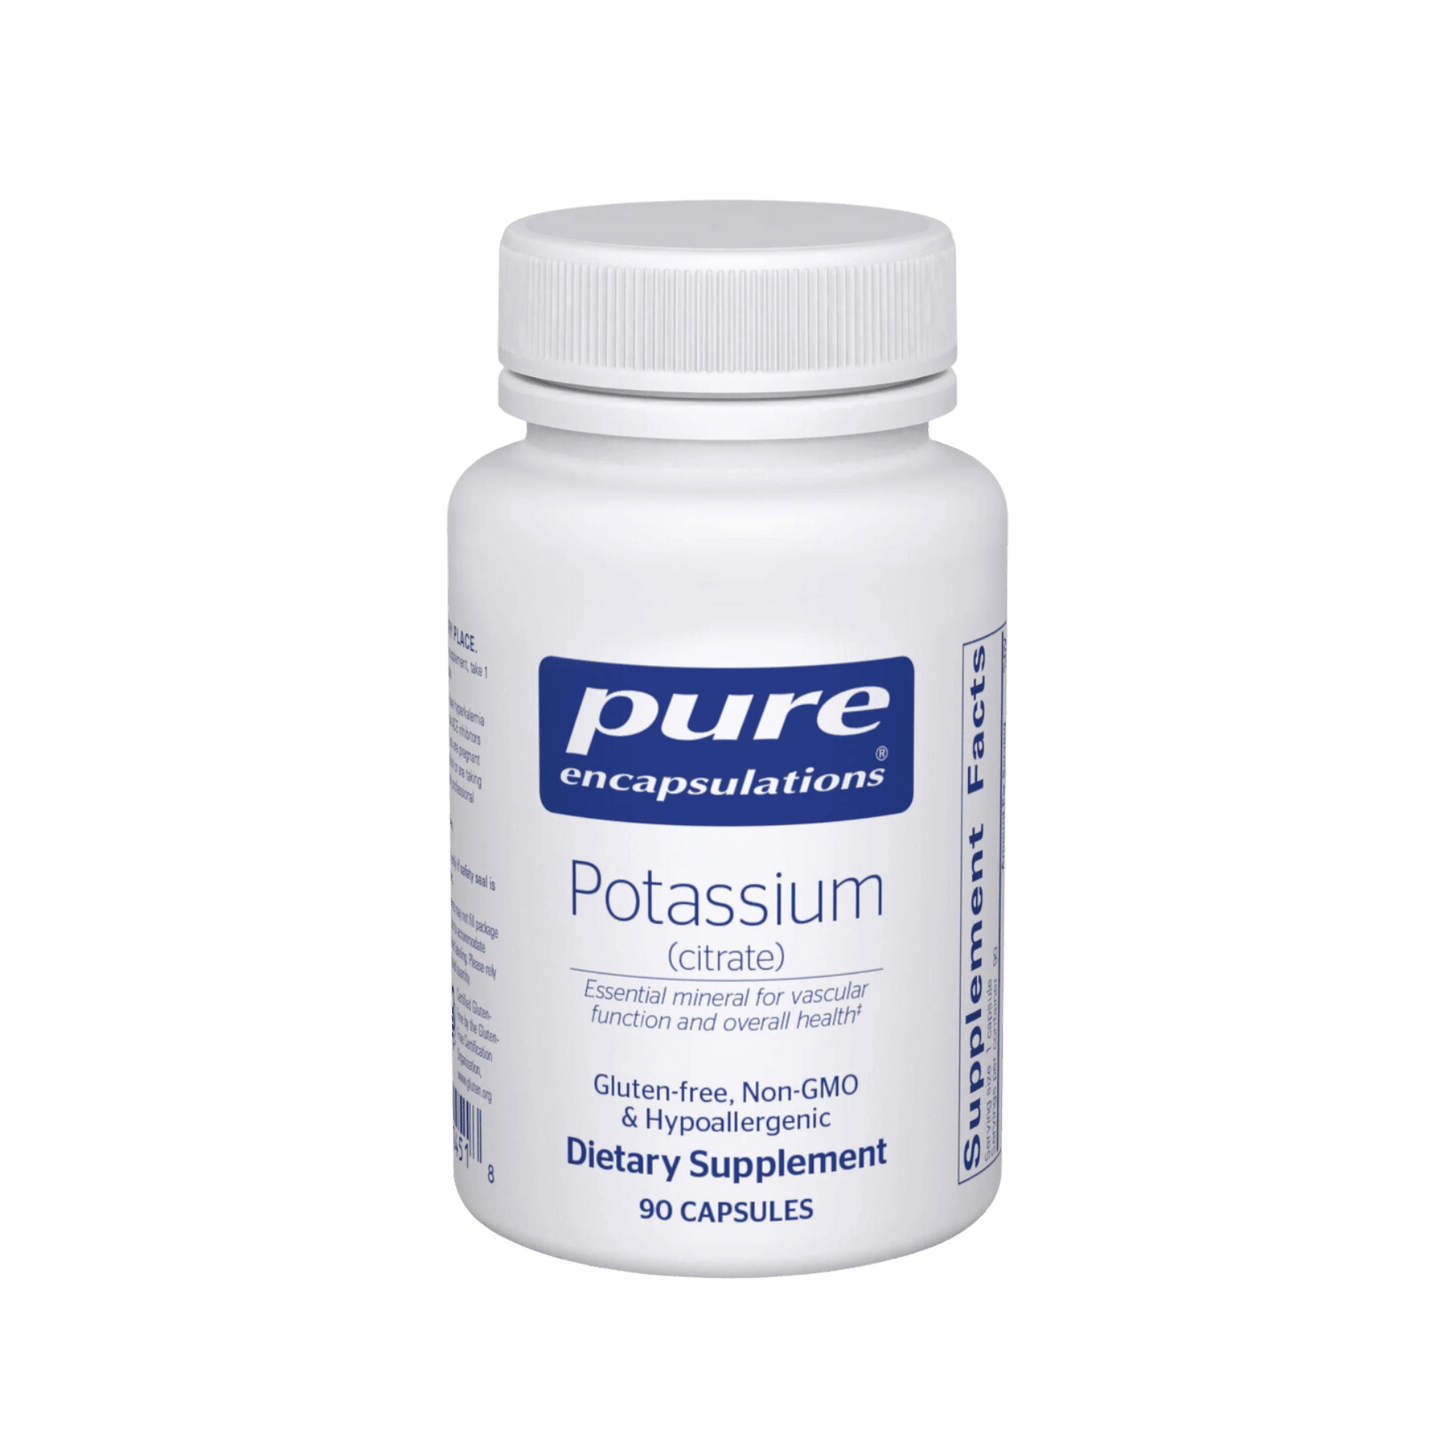 Pure Encapsulations Potassium Citrate Capsules